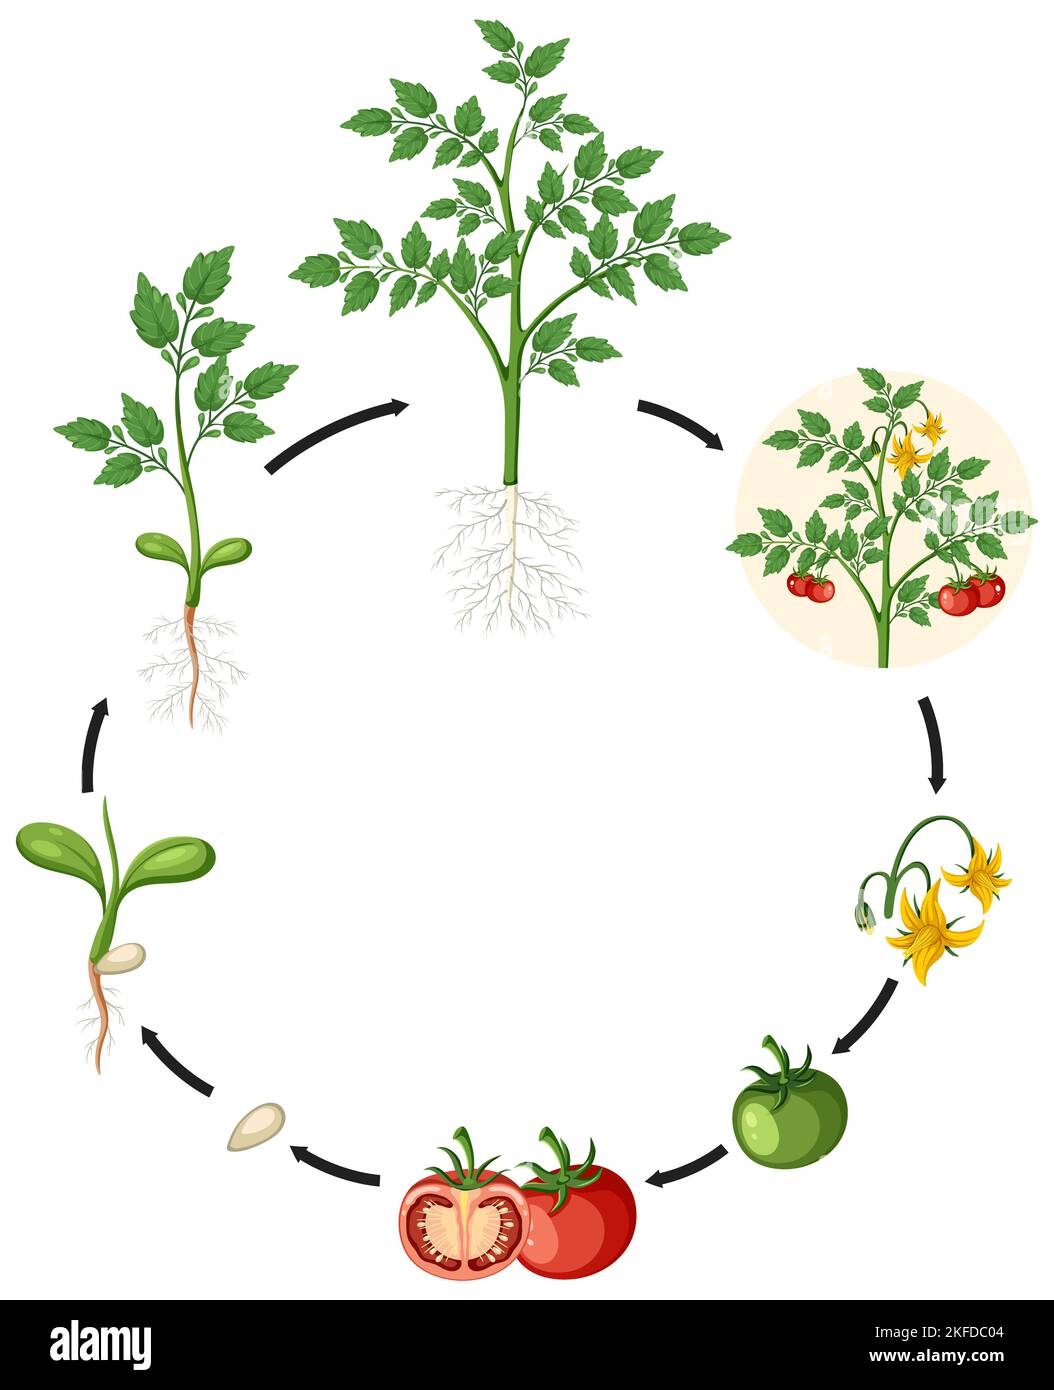 Illustration scientifique du cercle de culture de la tomate Banque D'Images